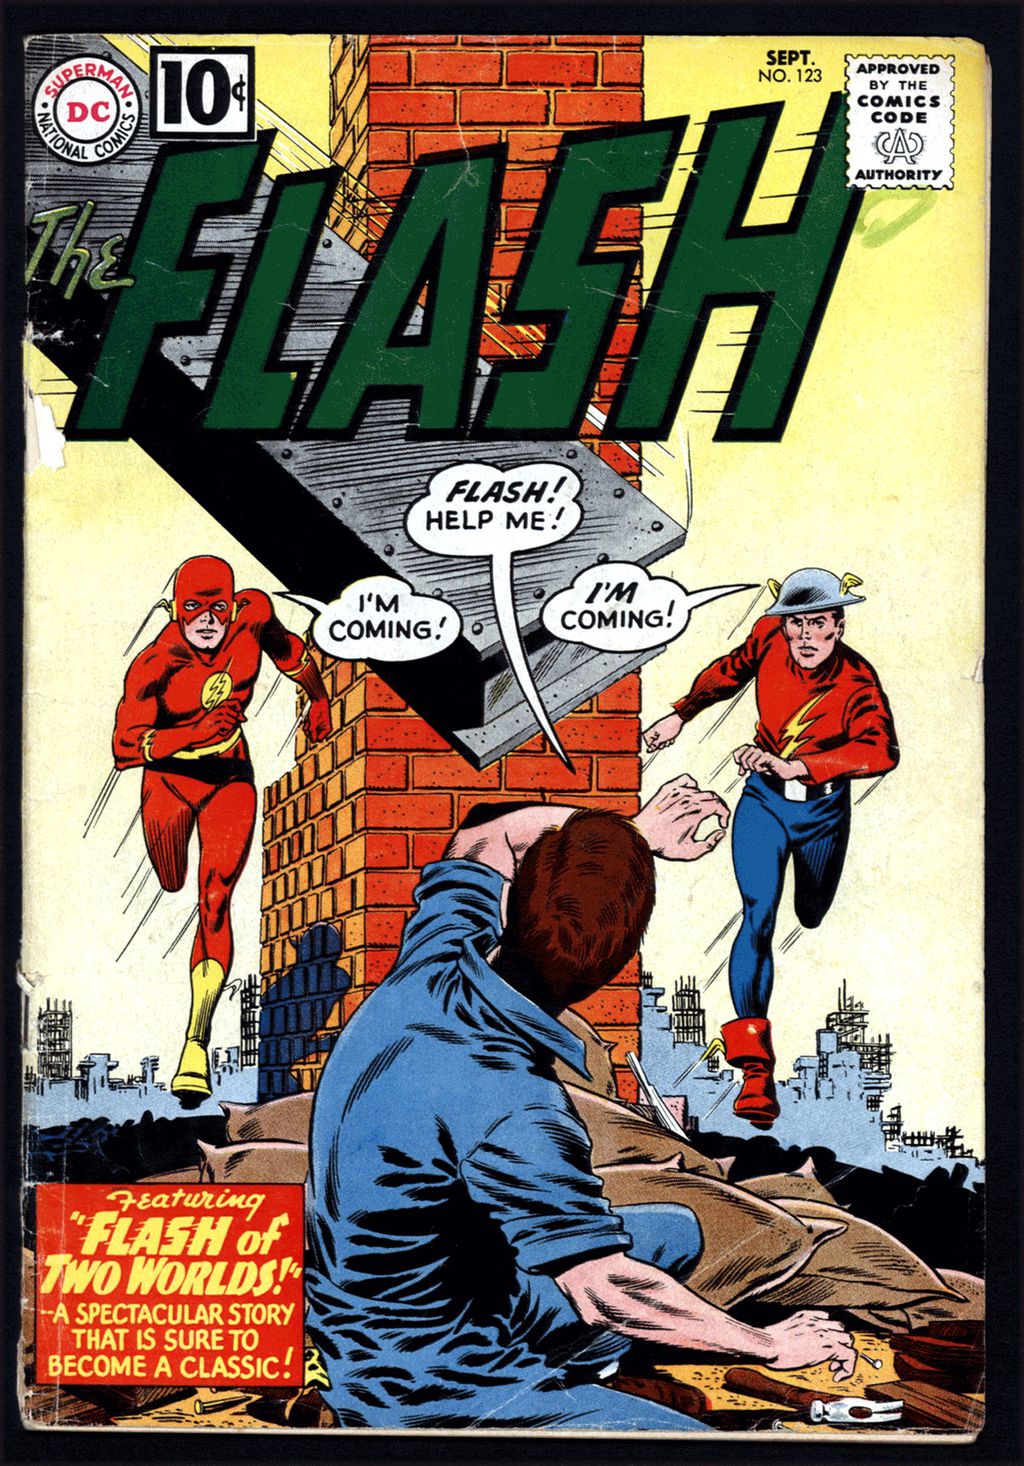 Evento de impacto da DC Comics: Flash de Dois Mundos (Imagem: Reprodução/DC Comics)